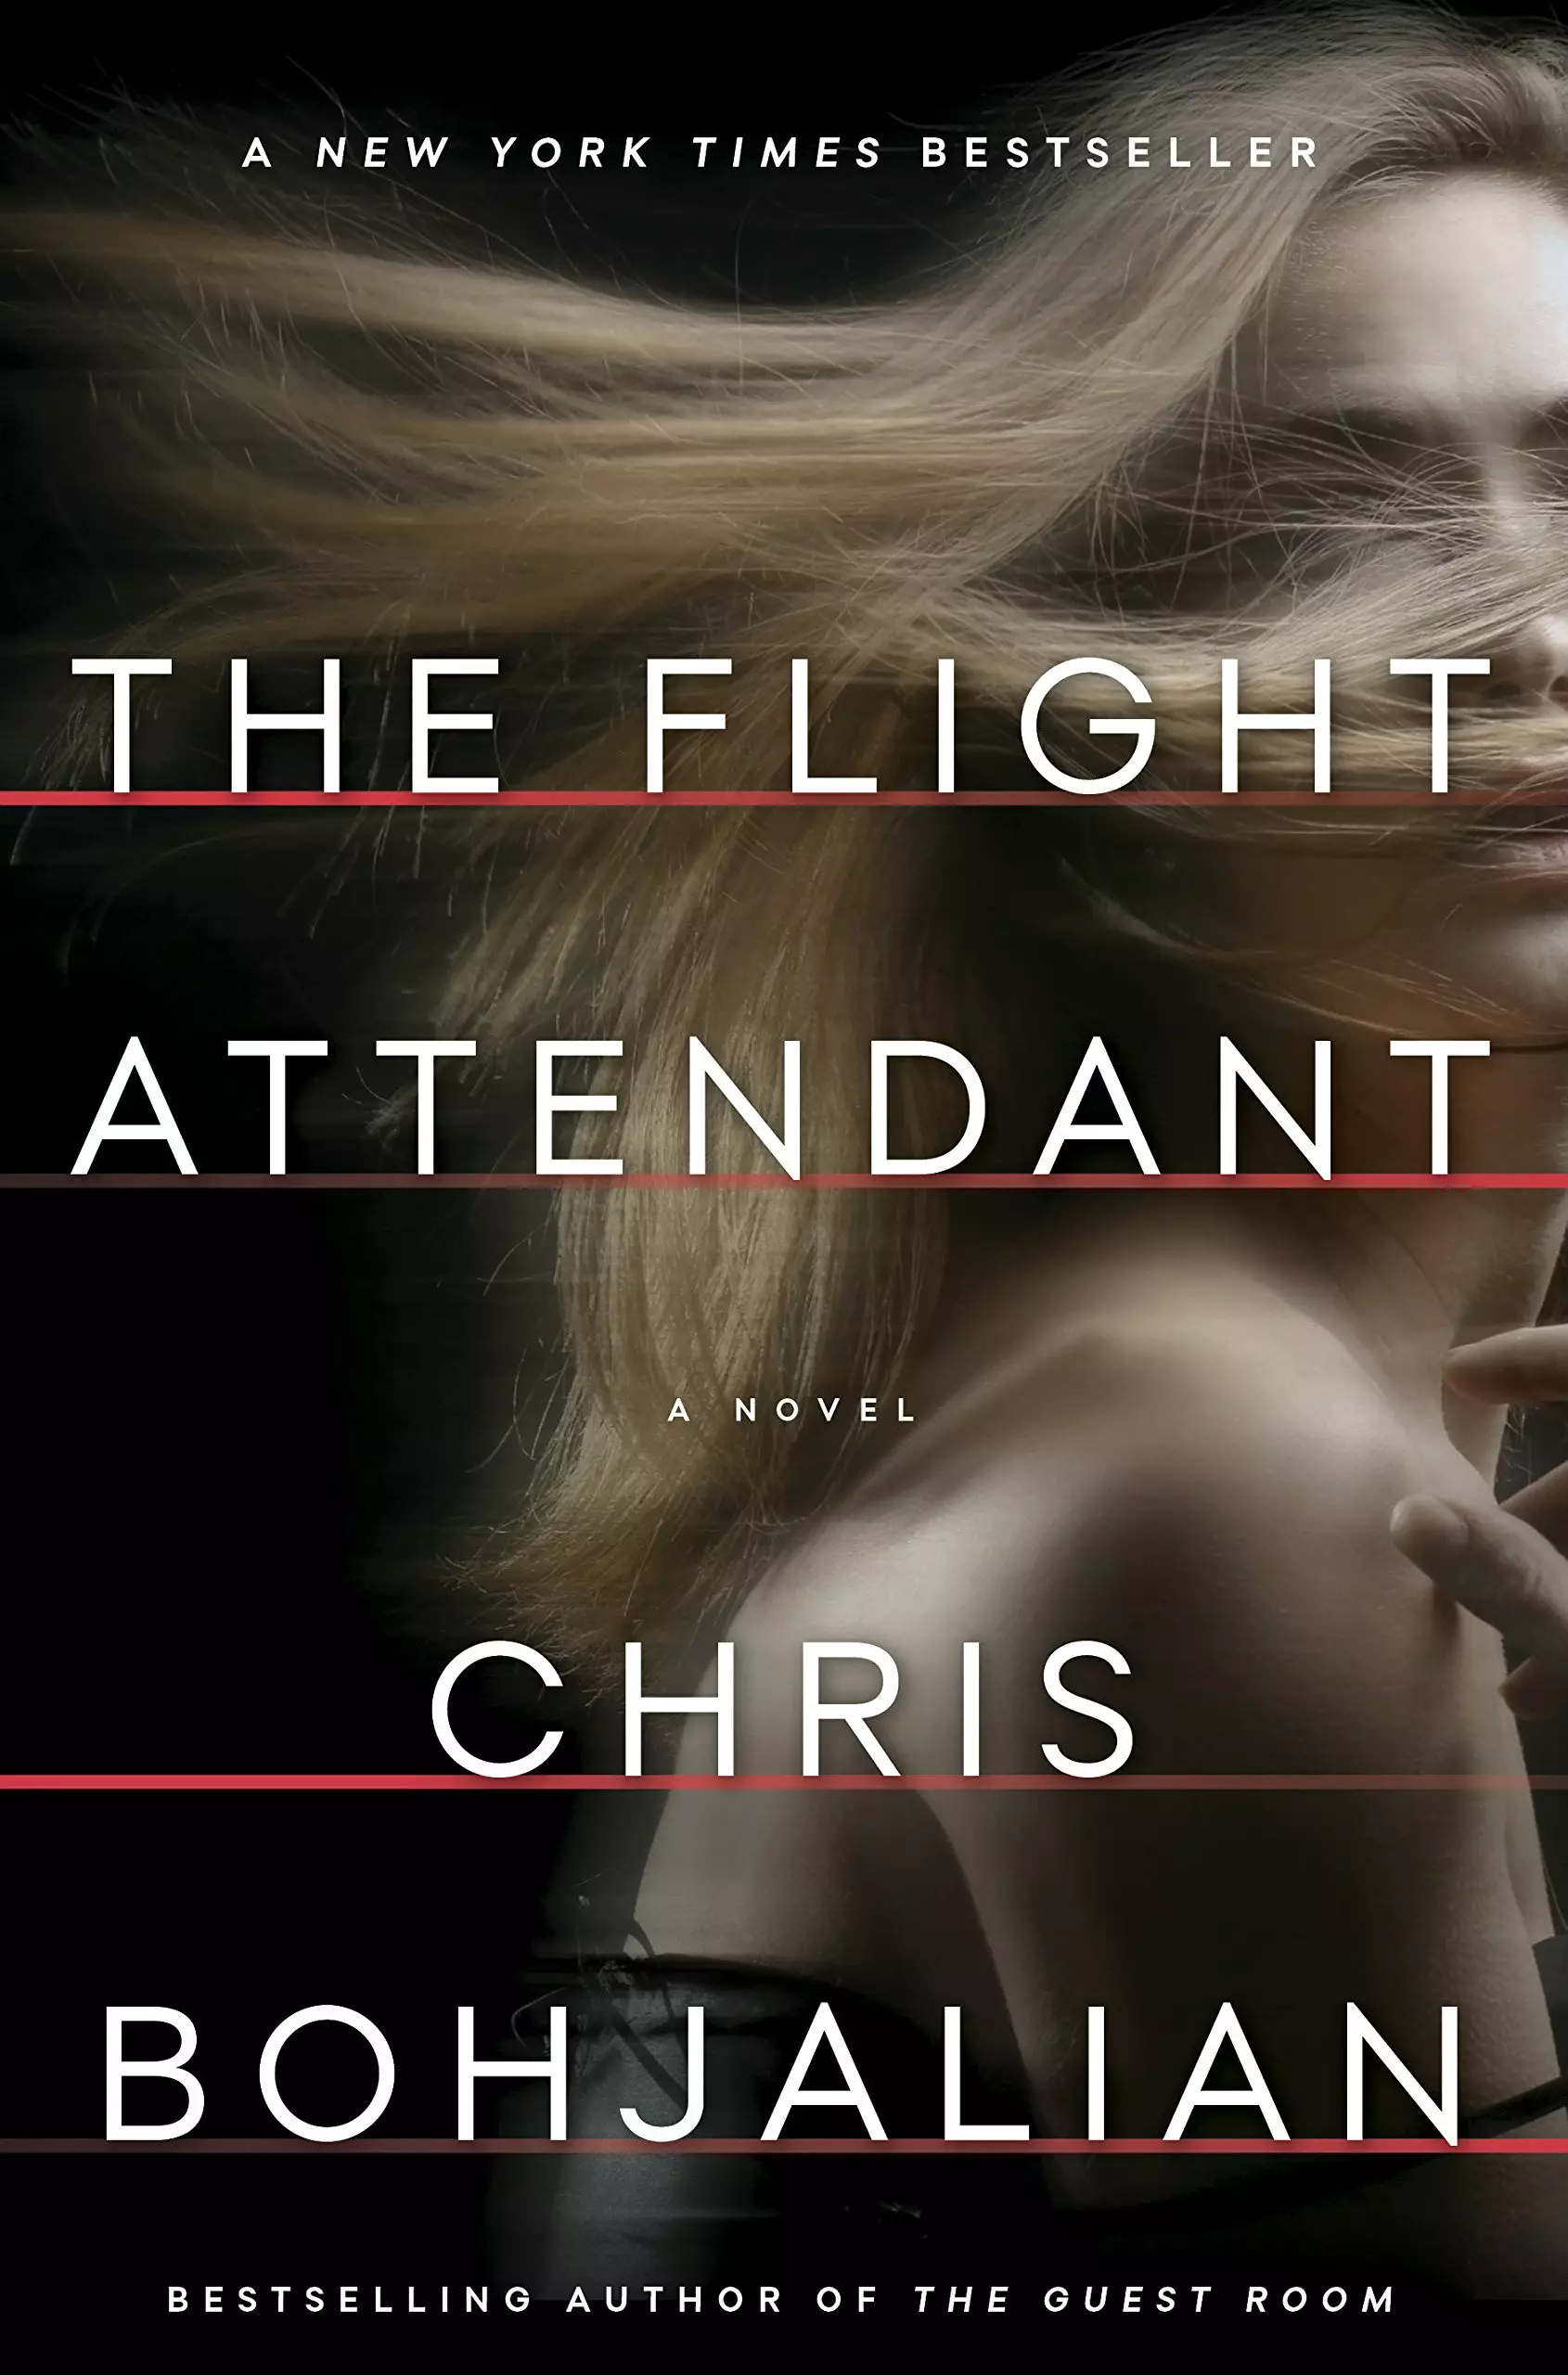 The Flight Attendant will be based on Chris Bohjalian's book